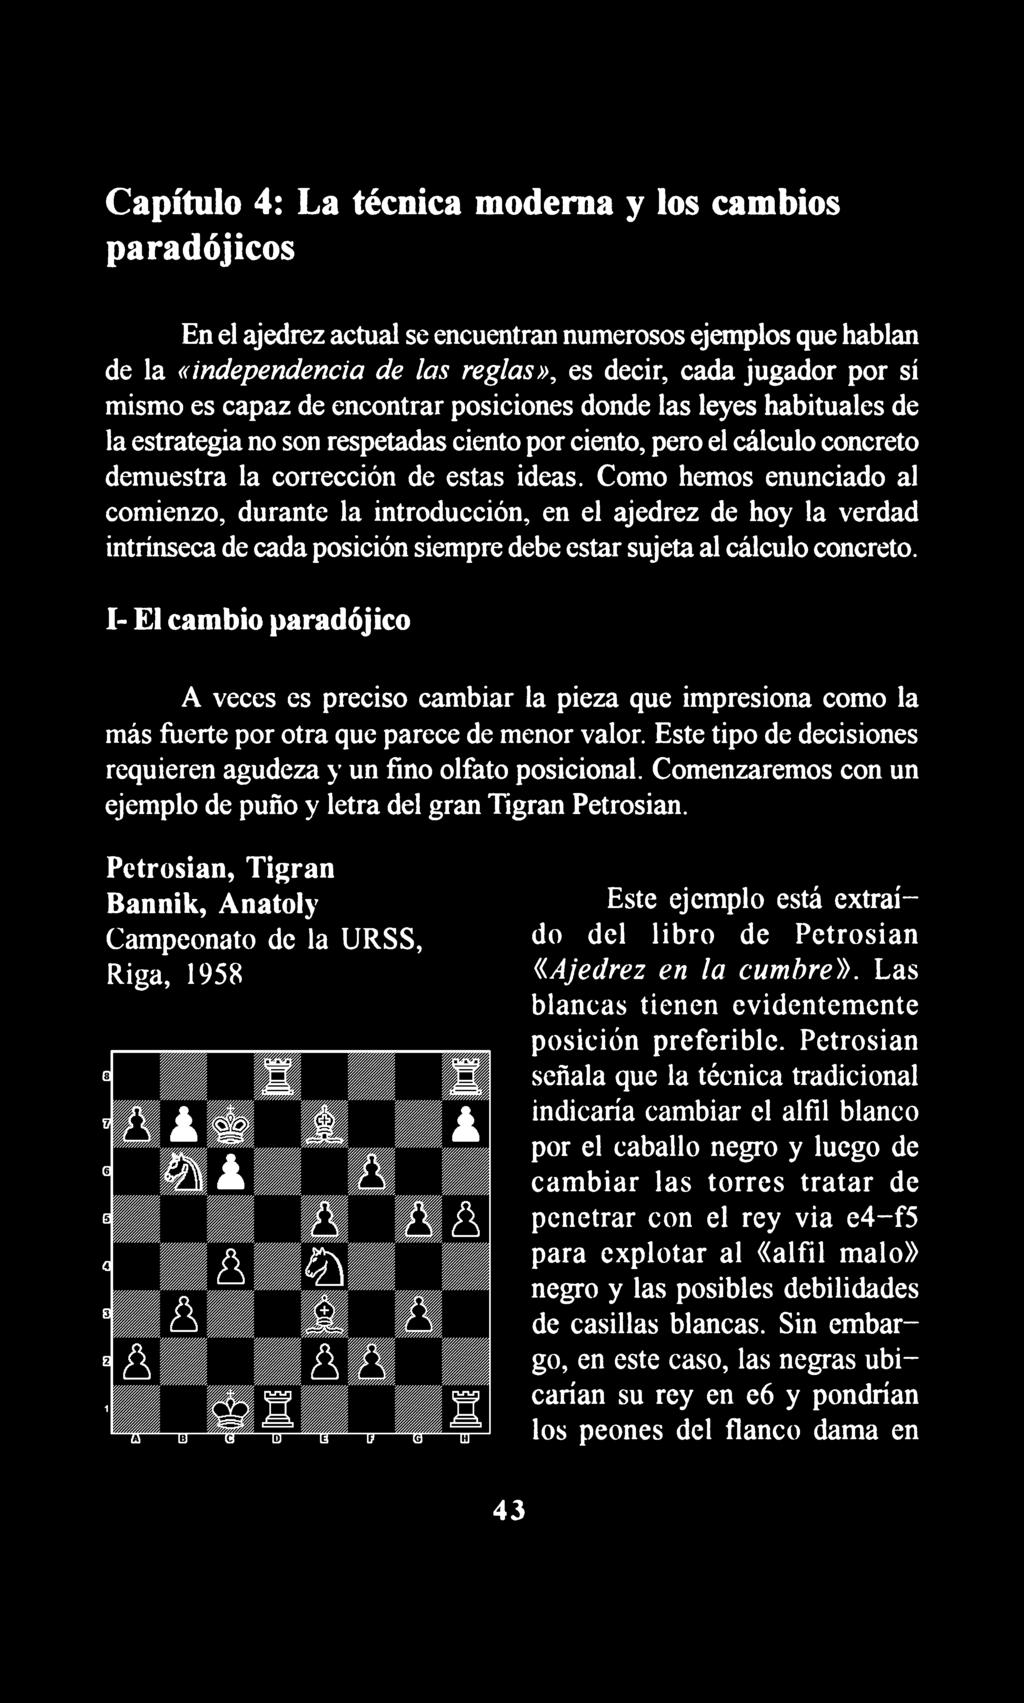 Como hemos enunciado al comienzo, durante la introducción, en el ajedrez de hoy la verdad intrínseca de cada posición siempre debe estar sujeta al cálculo concreto.